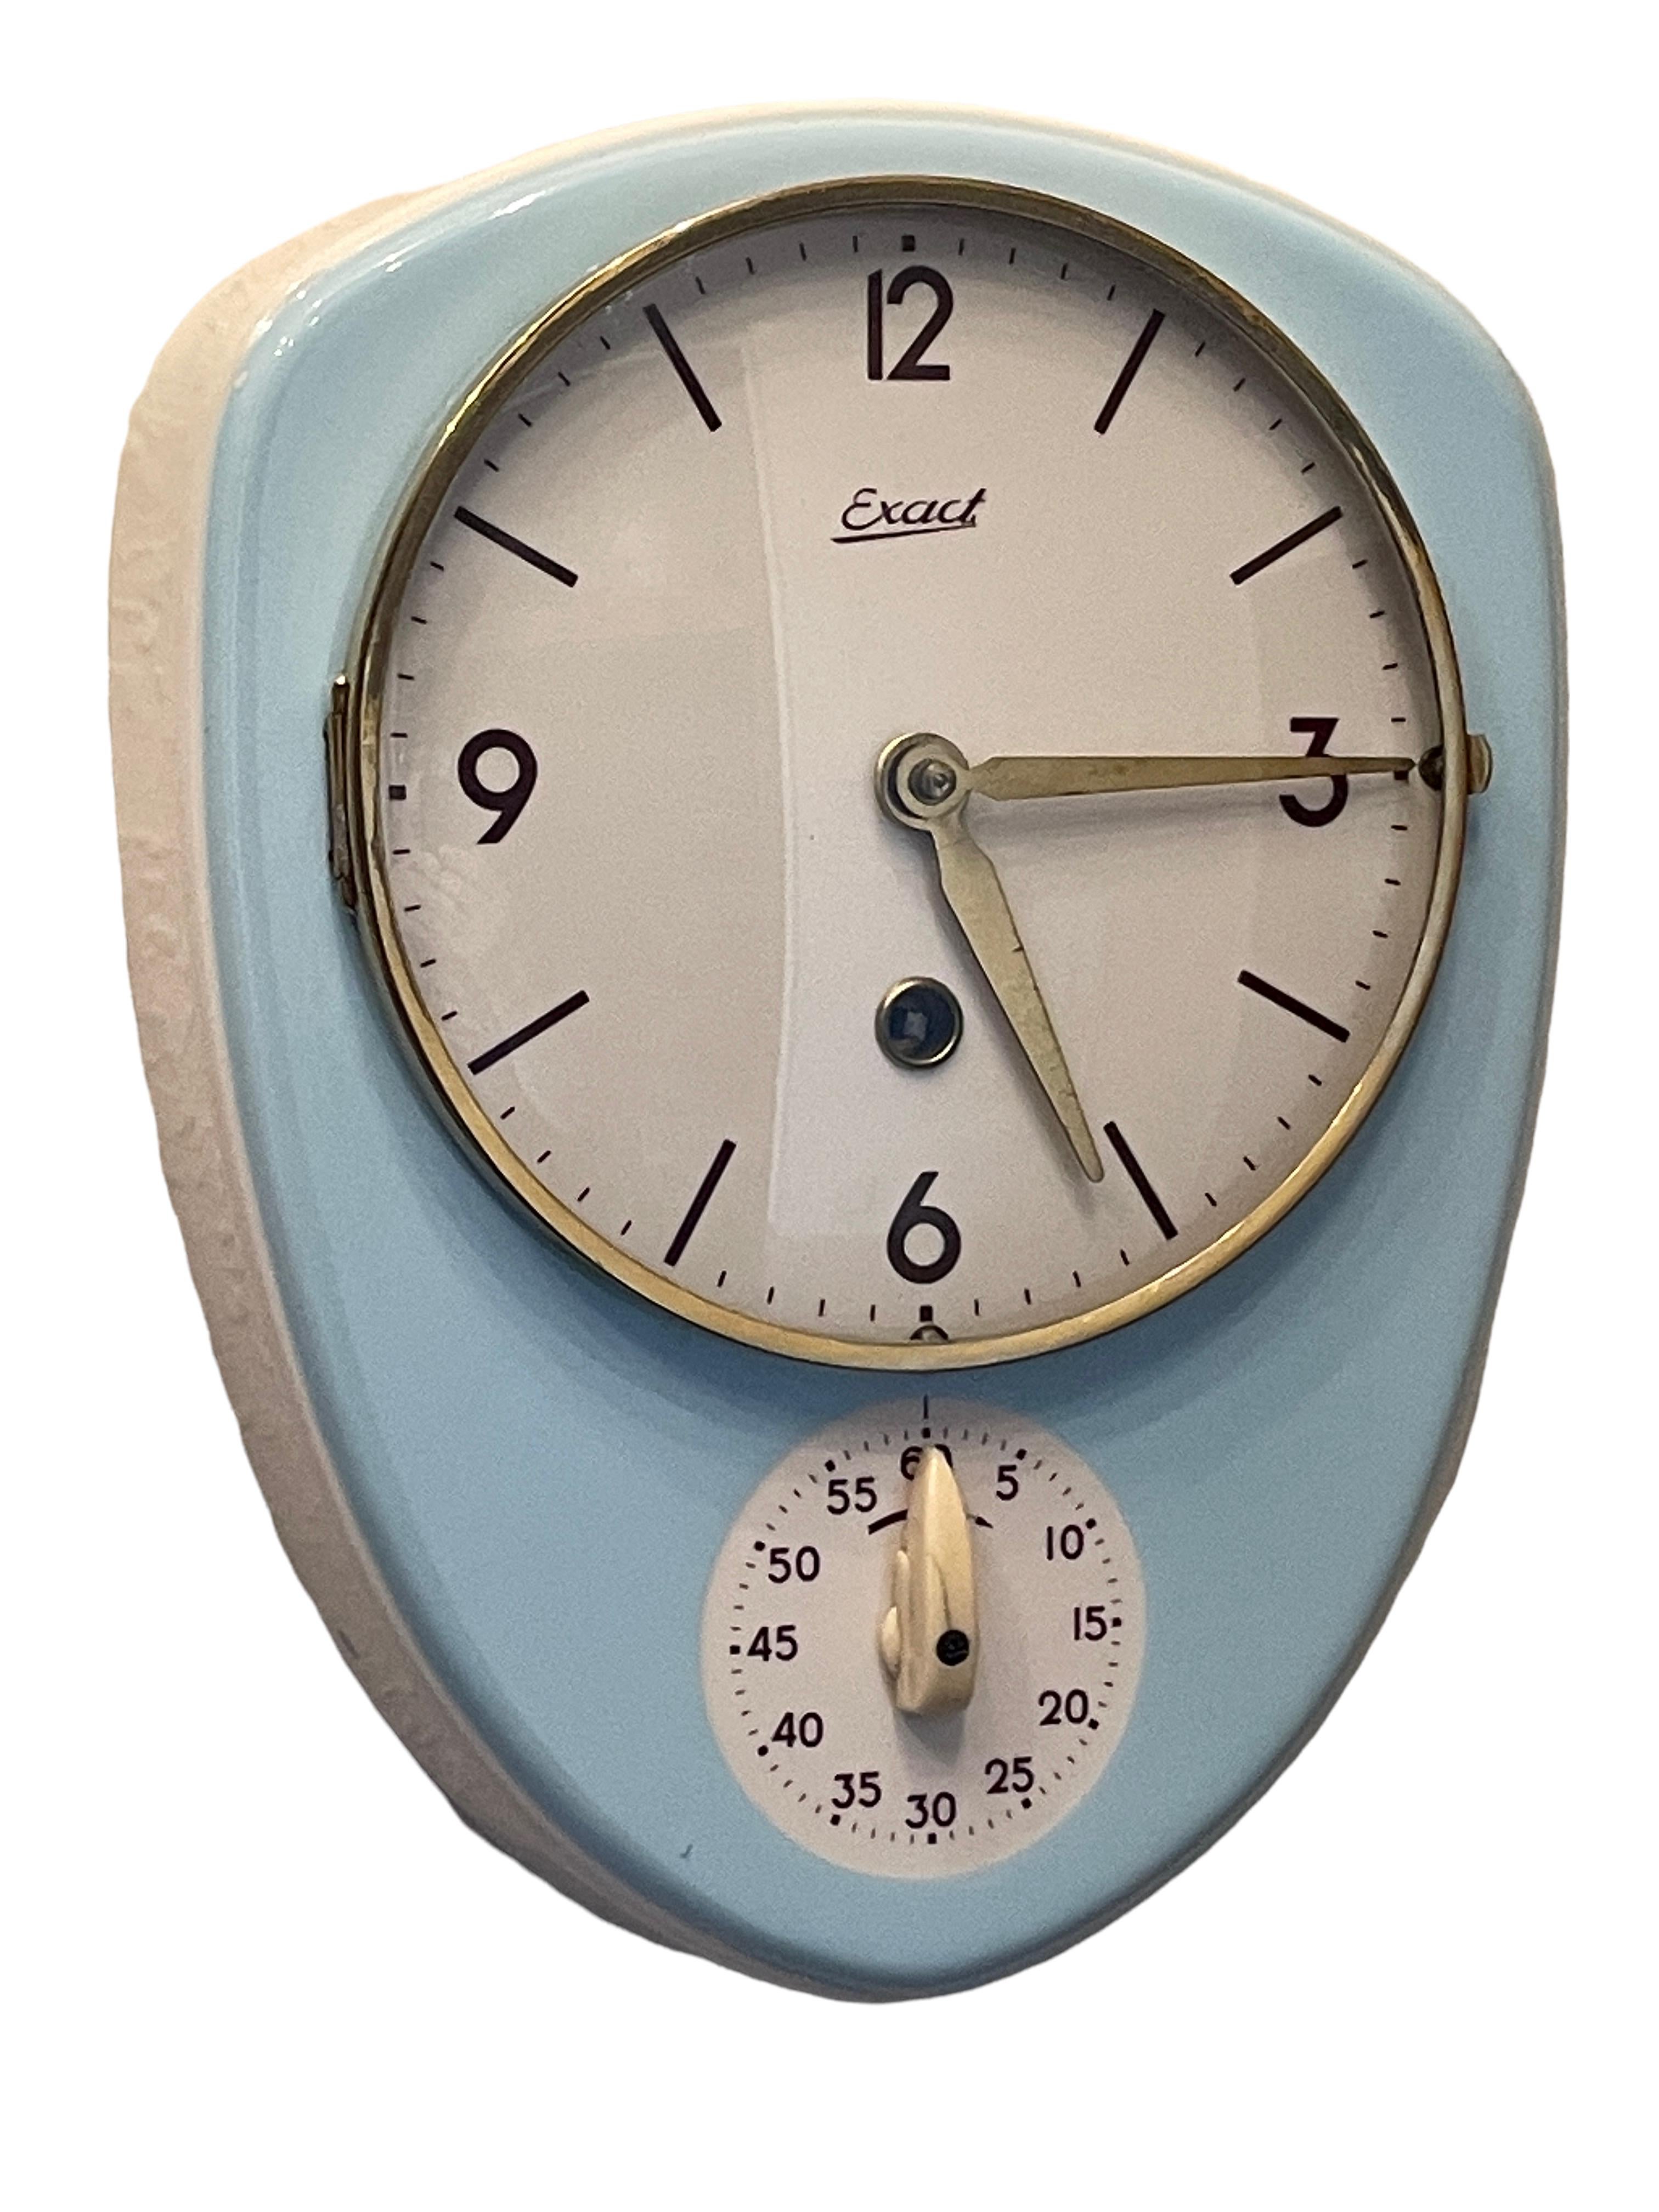 Superbe horloge de cuisine originale en céramique émaillée bleue conçue et fabriquée par Exact, Allemagne, années 1950. Cette horloge ancienne originale est une icône de design bien connue, présentée dans de nombreux livres et catalogues importants.